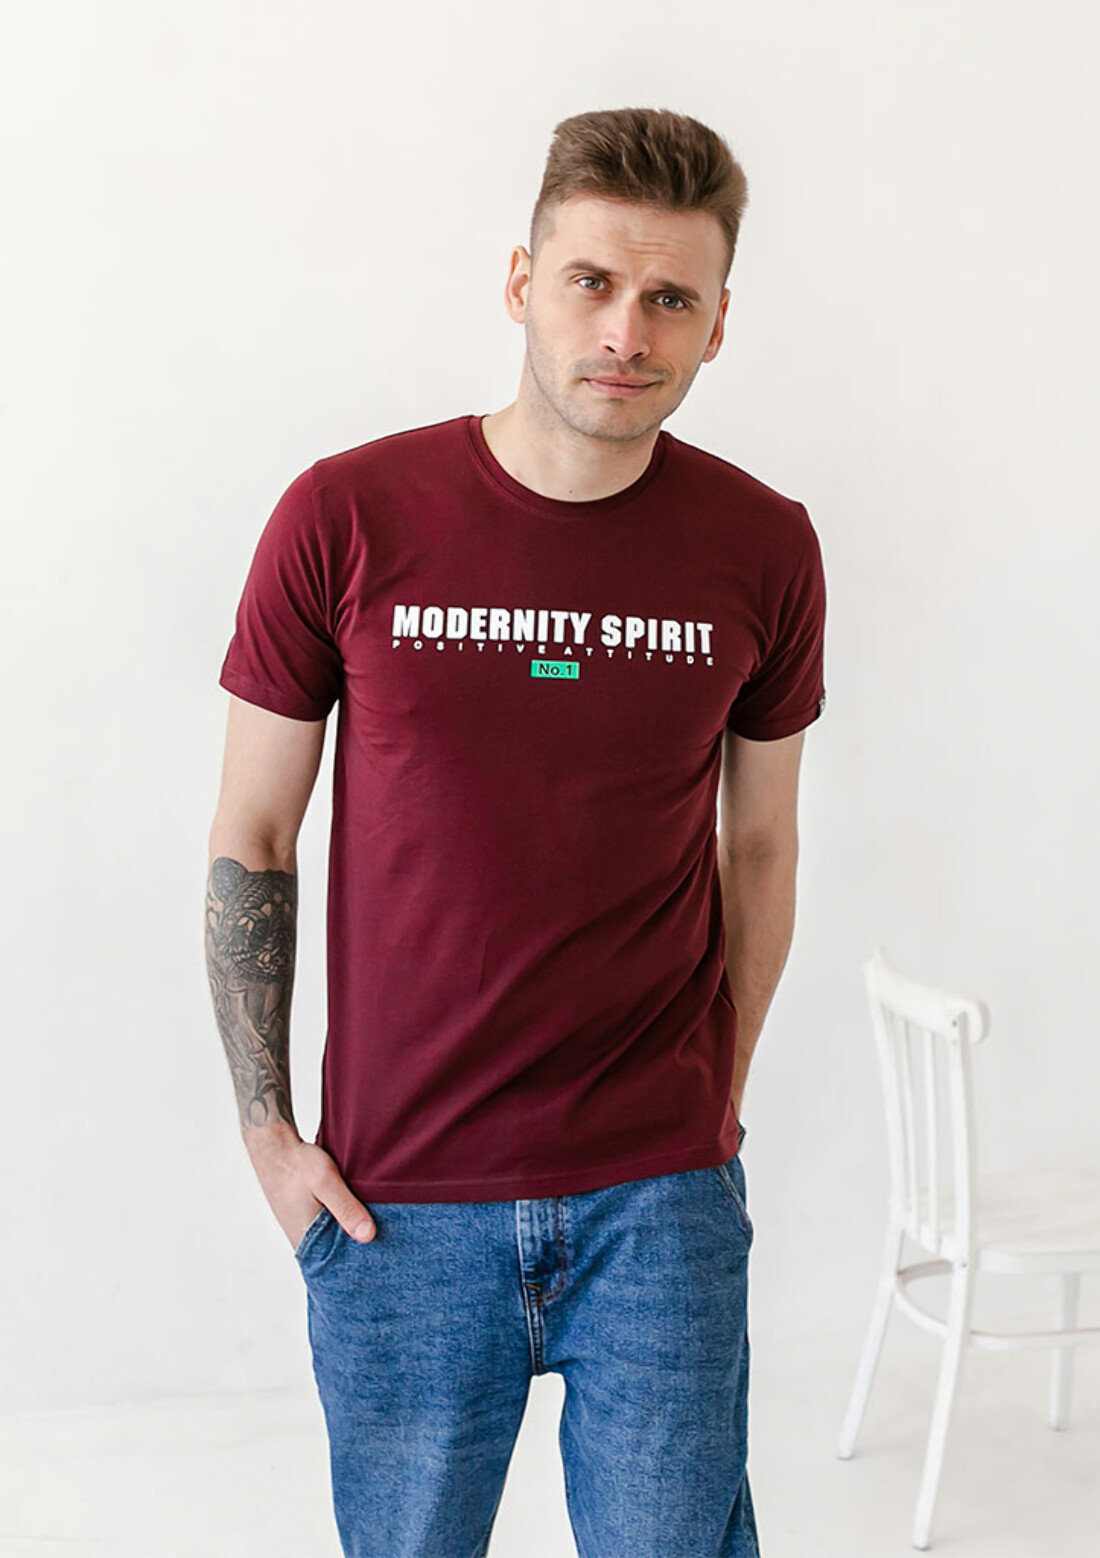 Мужская футболка modernity spirit 40042